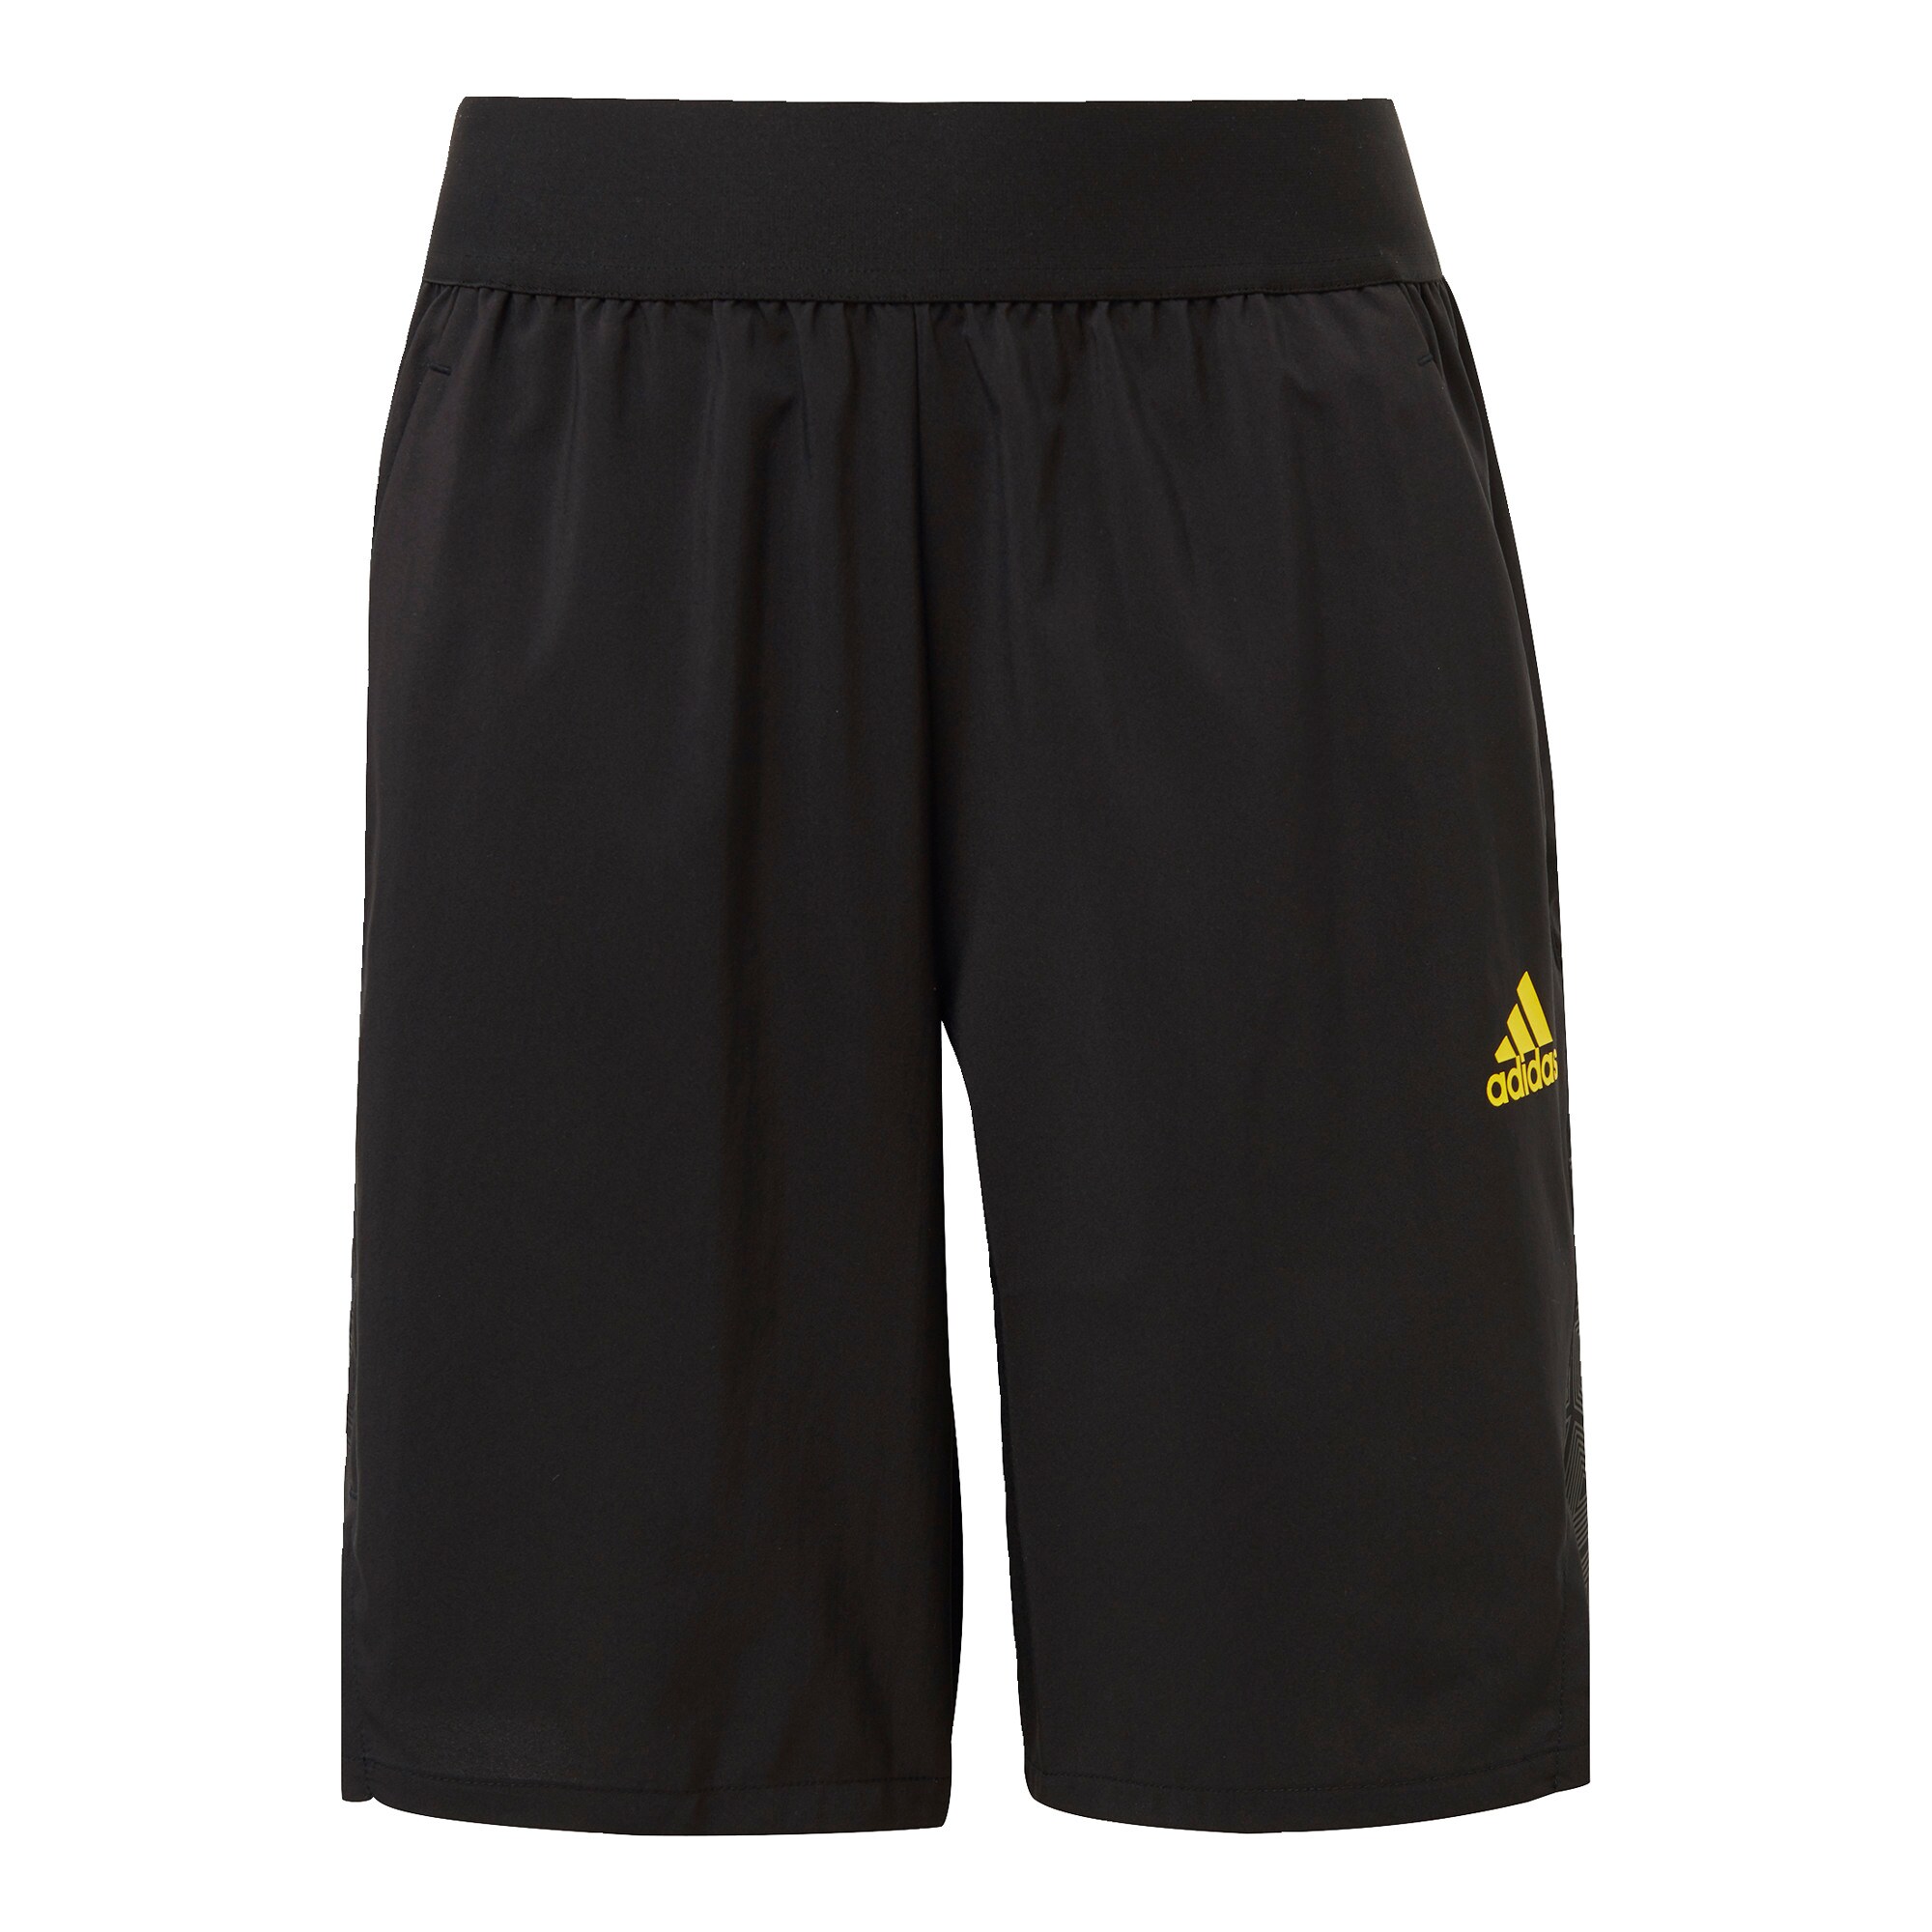 ADIDAS PERFORMANCE Sportinės kelnės 'Predator'  juoda / geltona / pilka